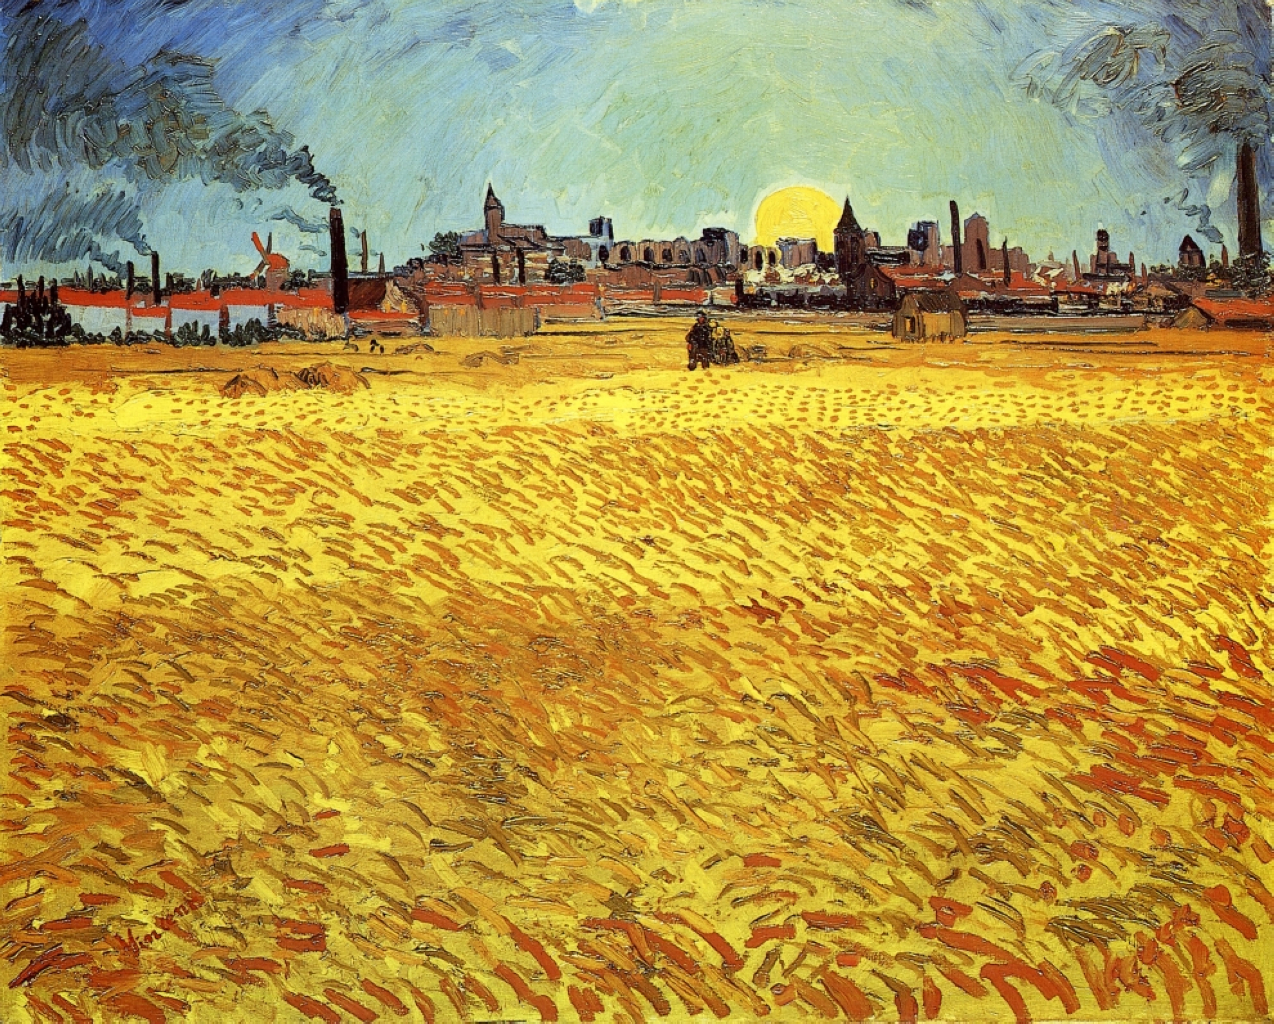 Tarde de Verão, Campo de Trigo com o Sol Poente by Vincent van Gogh - 1888 - 188 x 231 cm 